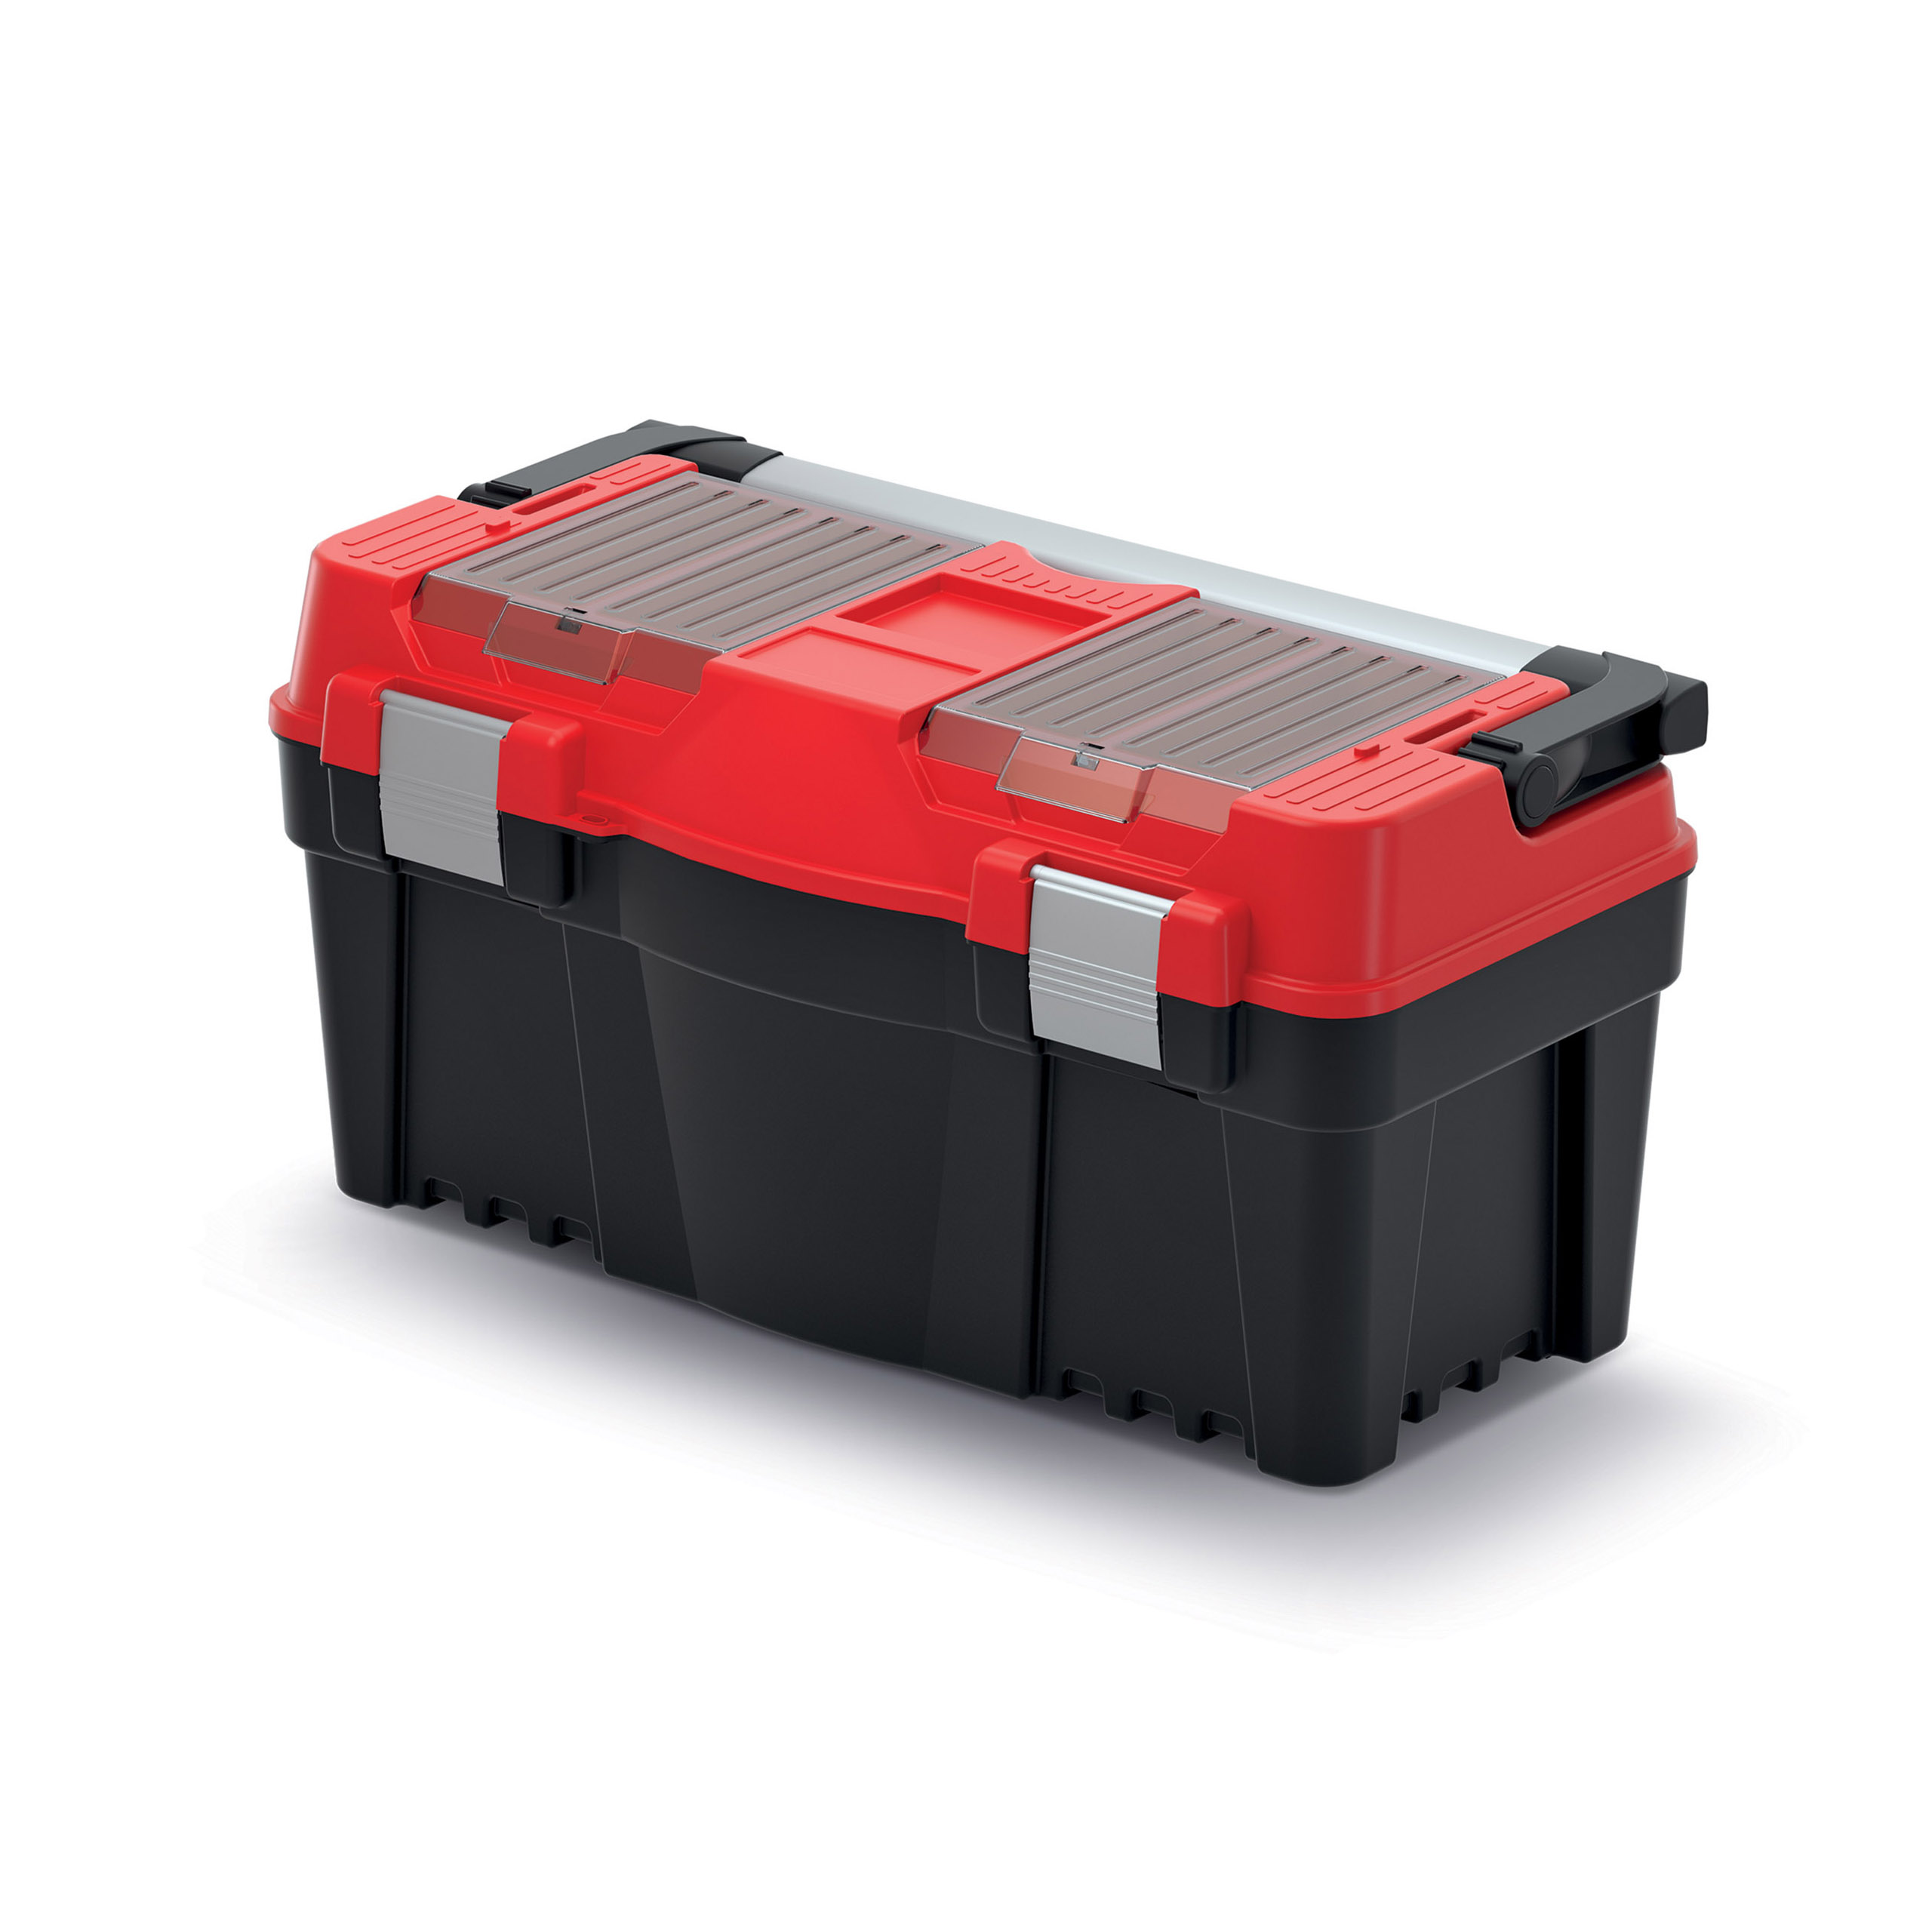 Aptop Plus toolbox KAP5530AL Red